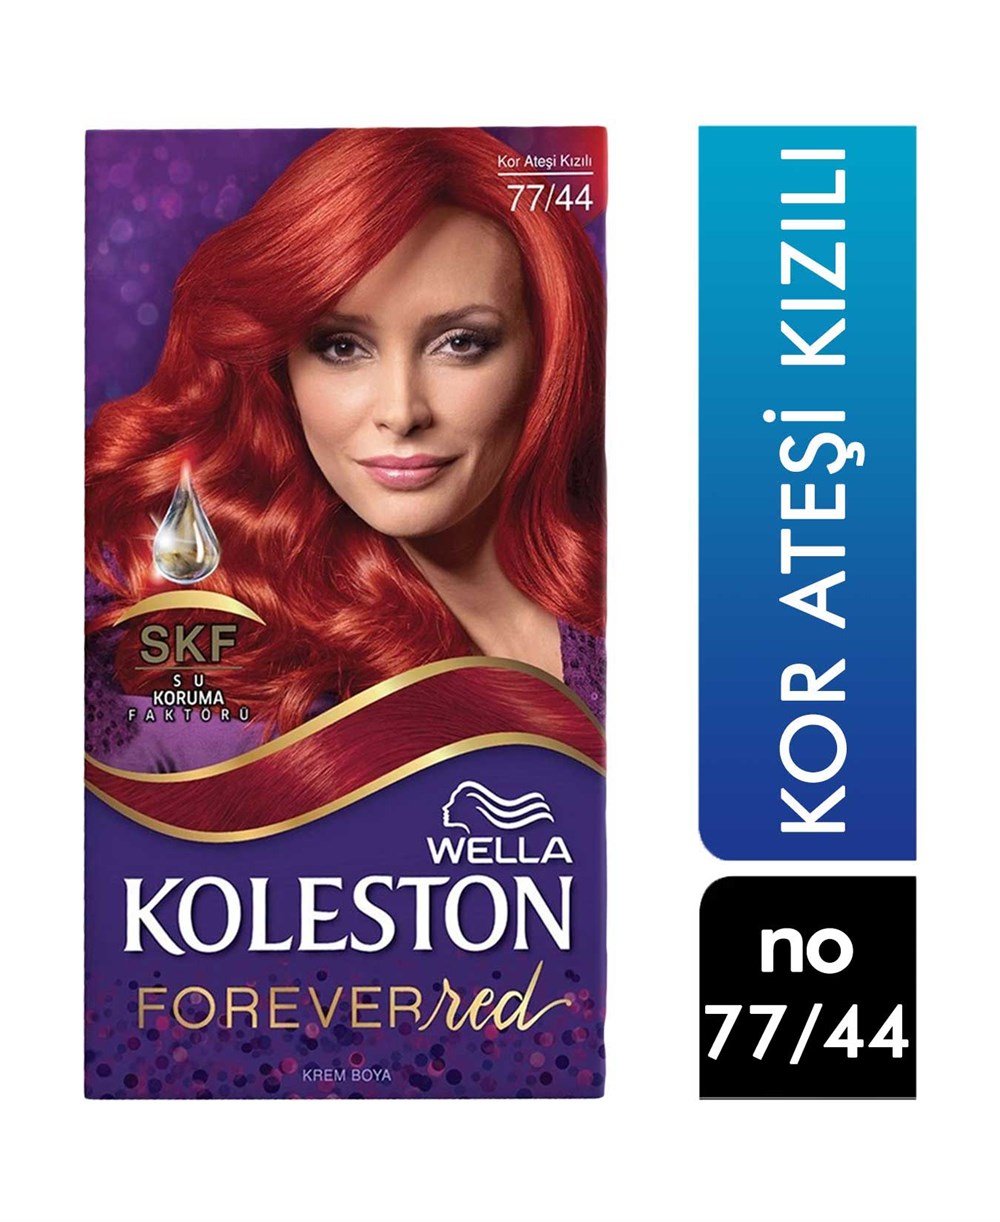 Koleston Set Saç Boyası 77.44 Kor Ateşi Kızılı | Cossta Cosmetic Station